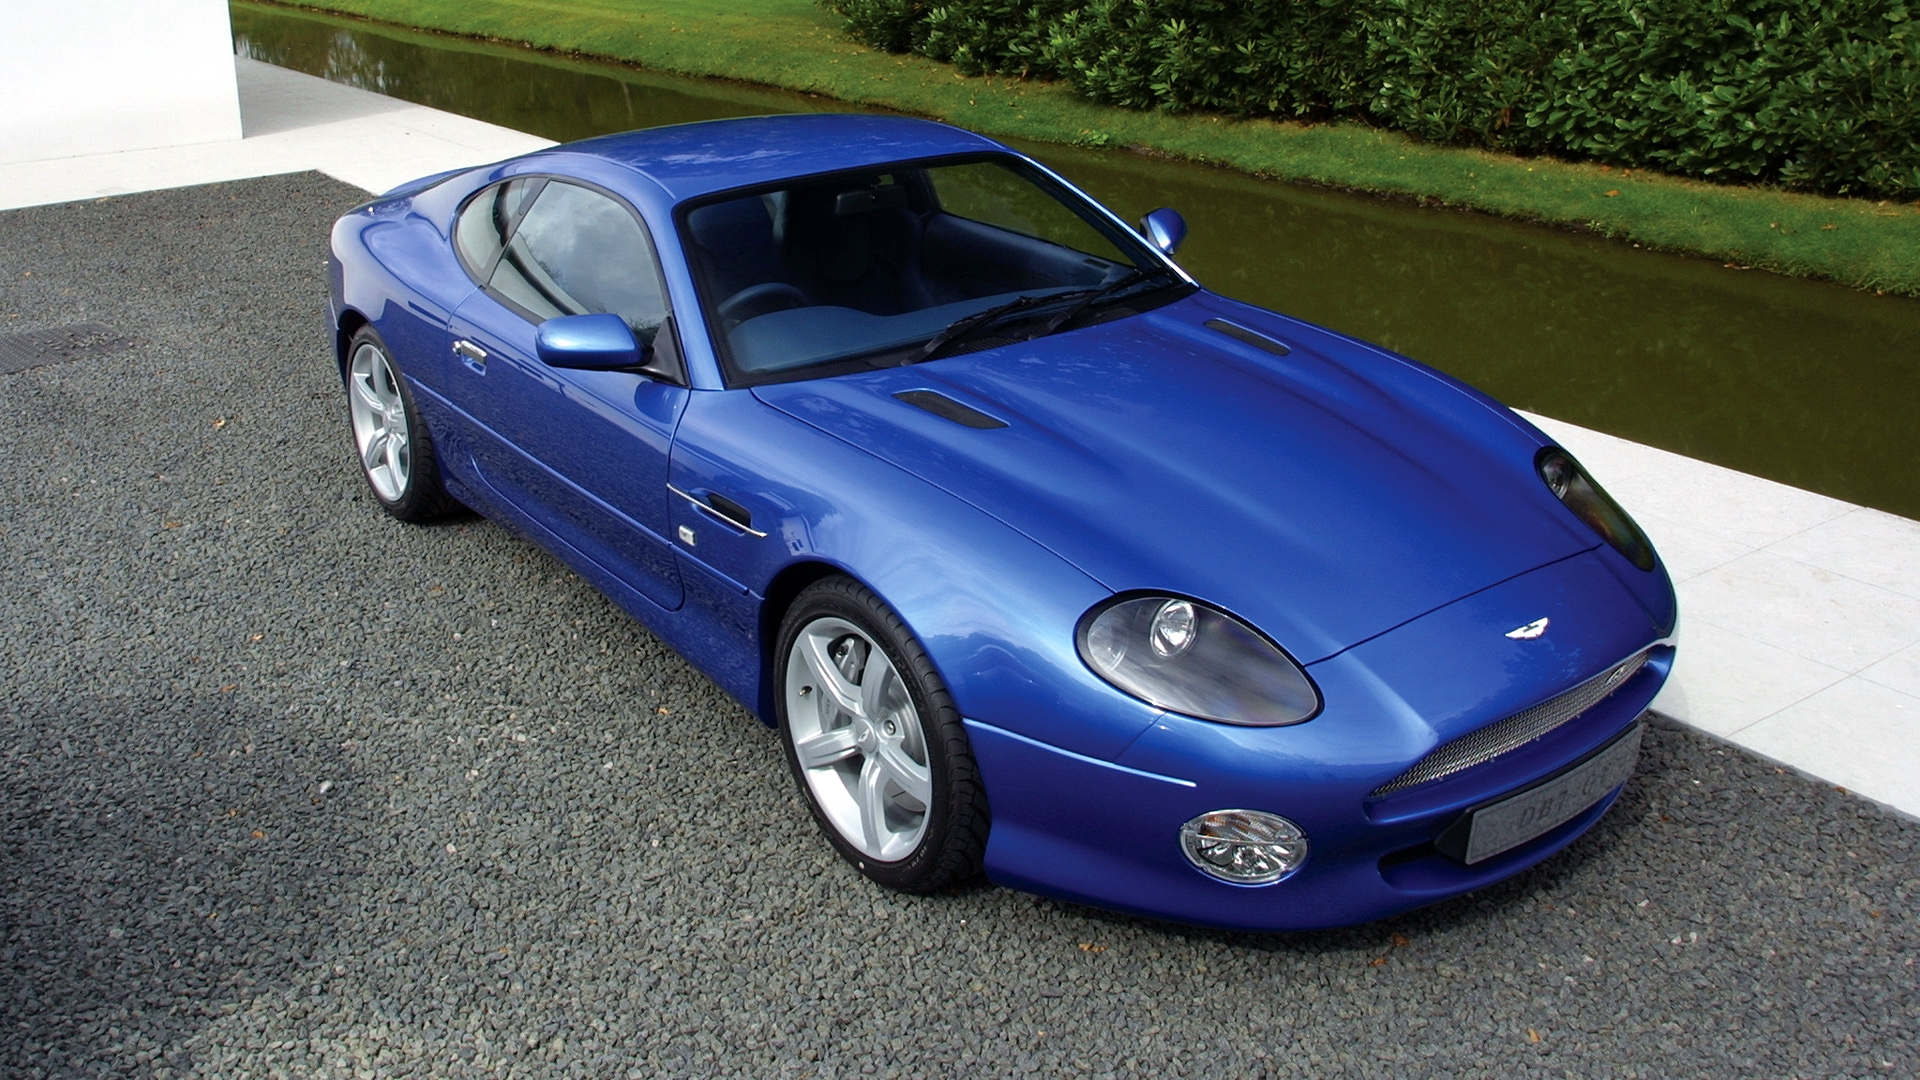  2003 Aston Martin DB7 GT Wallpaper.